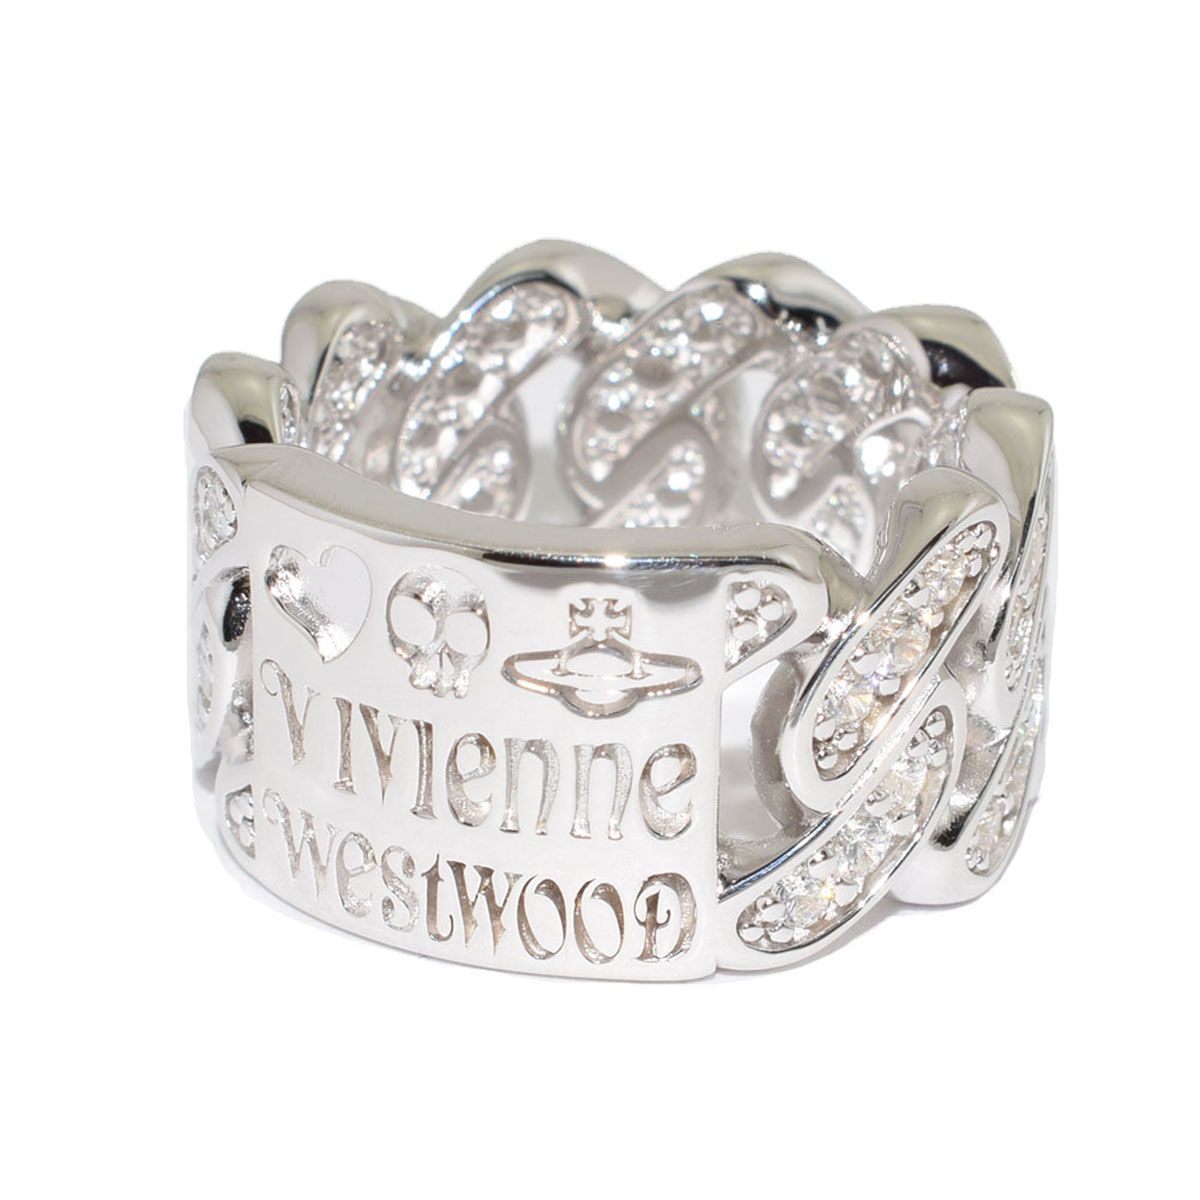 ヴィヴィアン ウエストウッド Vivienne Westwood 指輪 リング ROY RING アクセサリー シルバー ギフト プレゼント クリスマス 誕生日 640